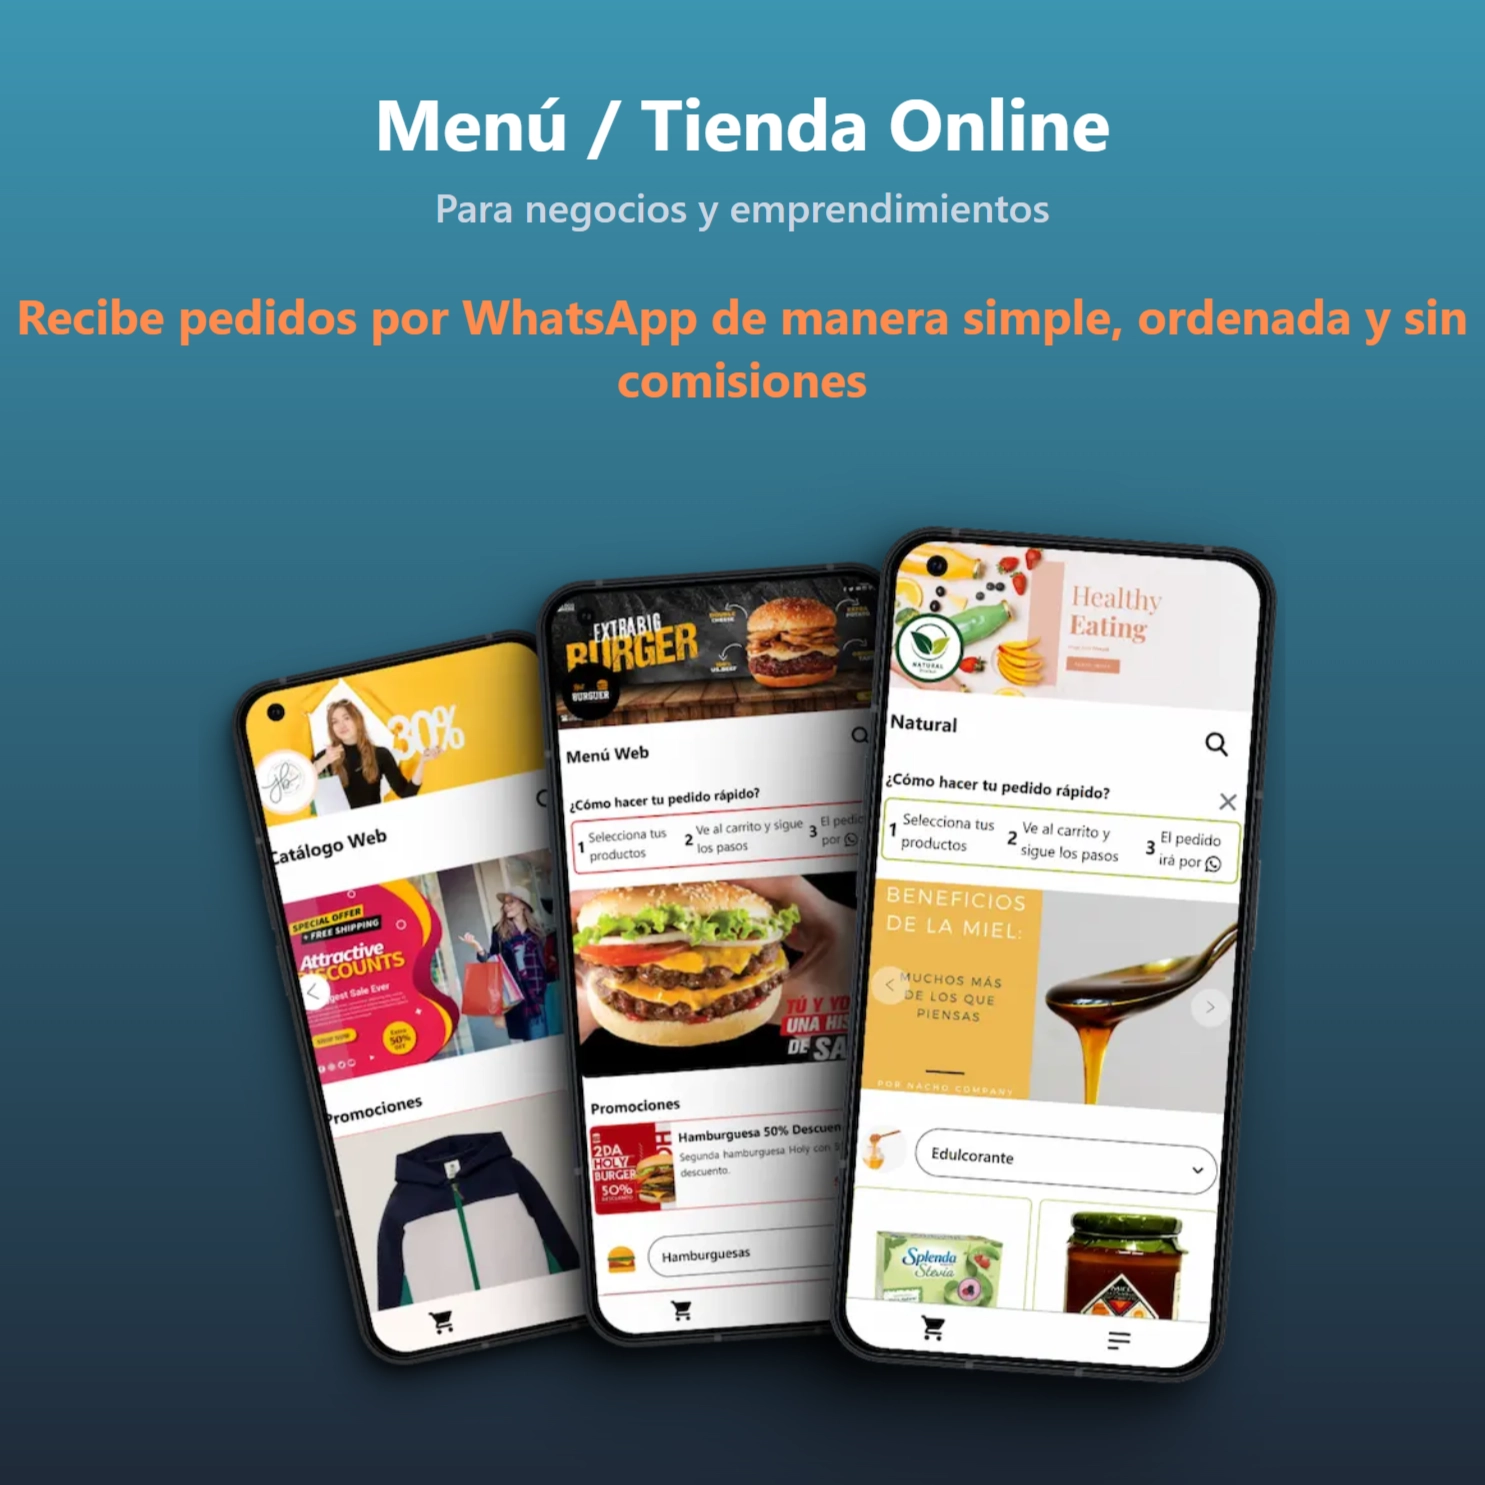 Menú / Tienda Online Web App, para negocios y emprendedores.